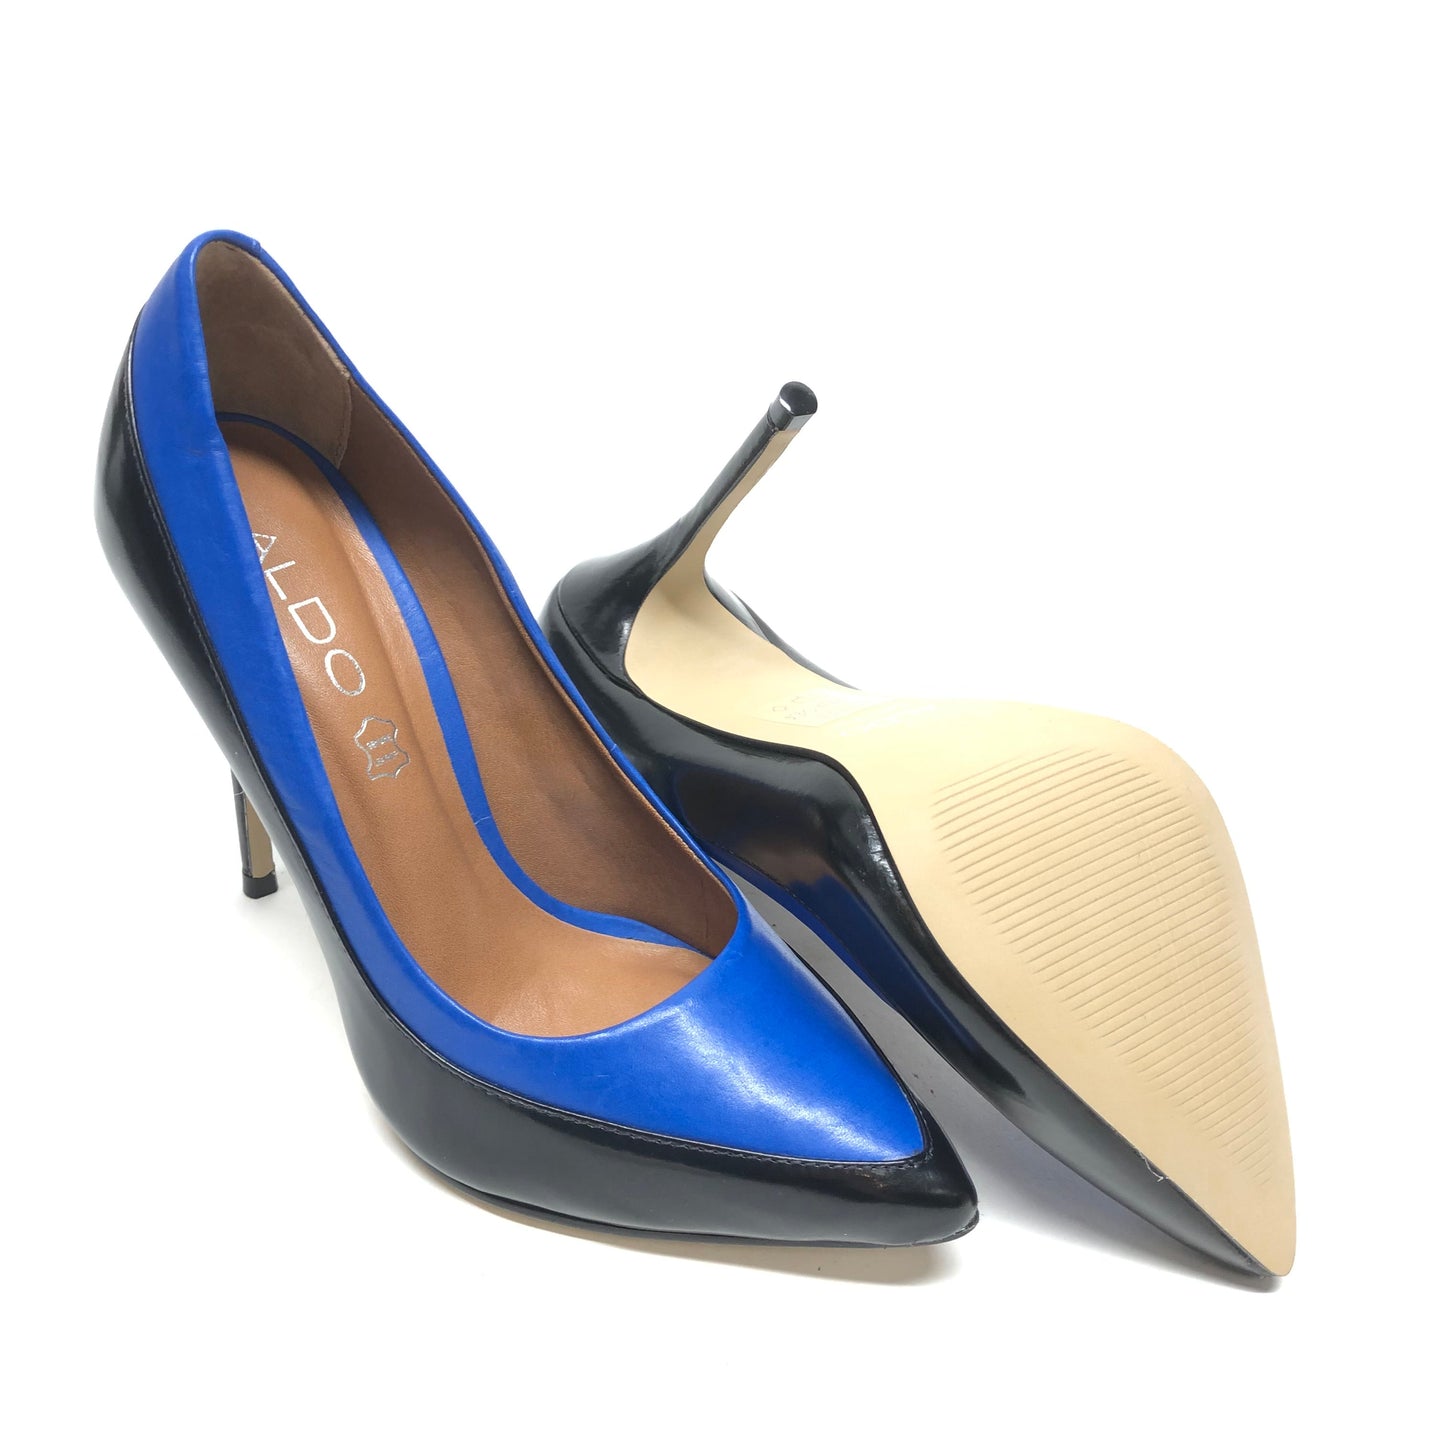 Black & Blue Shoes Heels Stiletto Aldo, Size 6